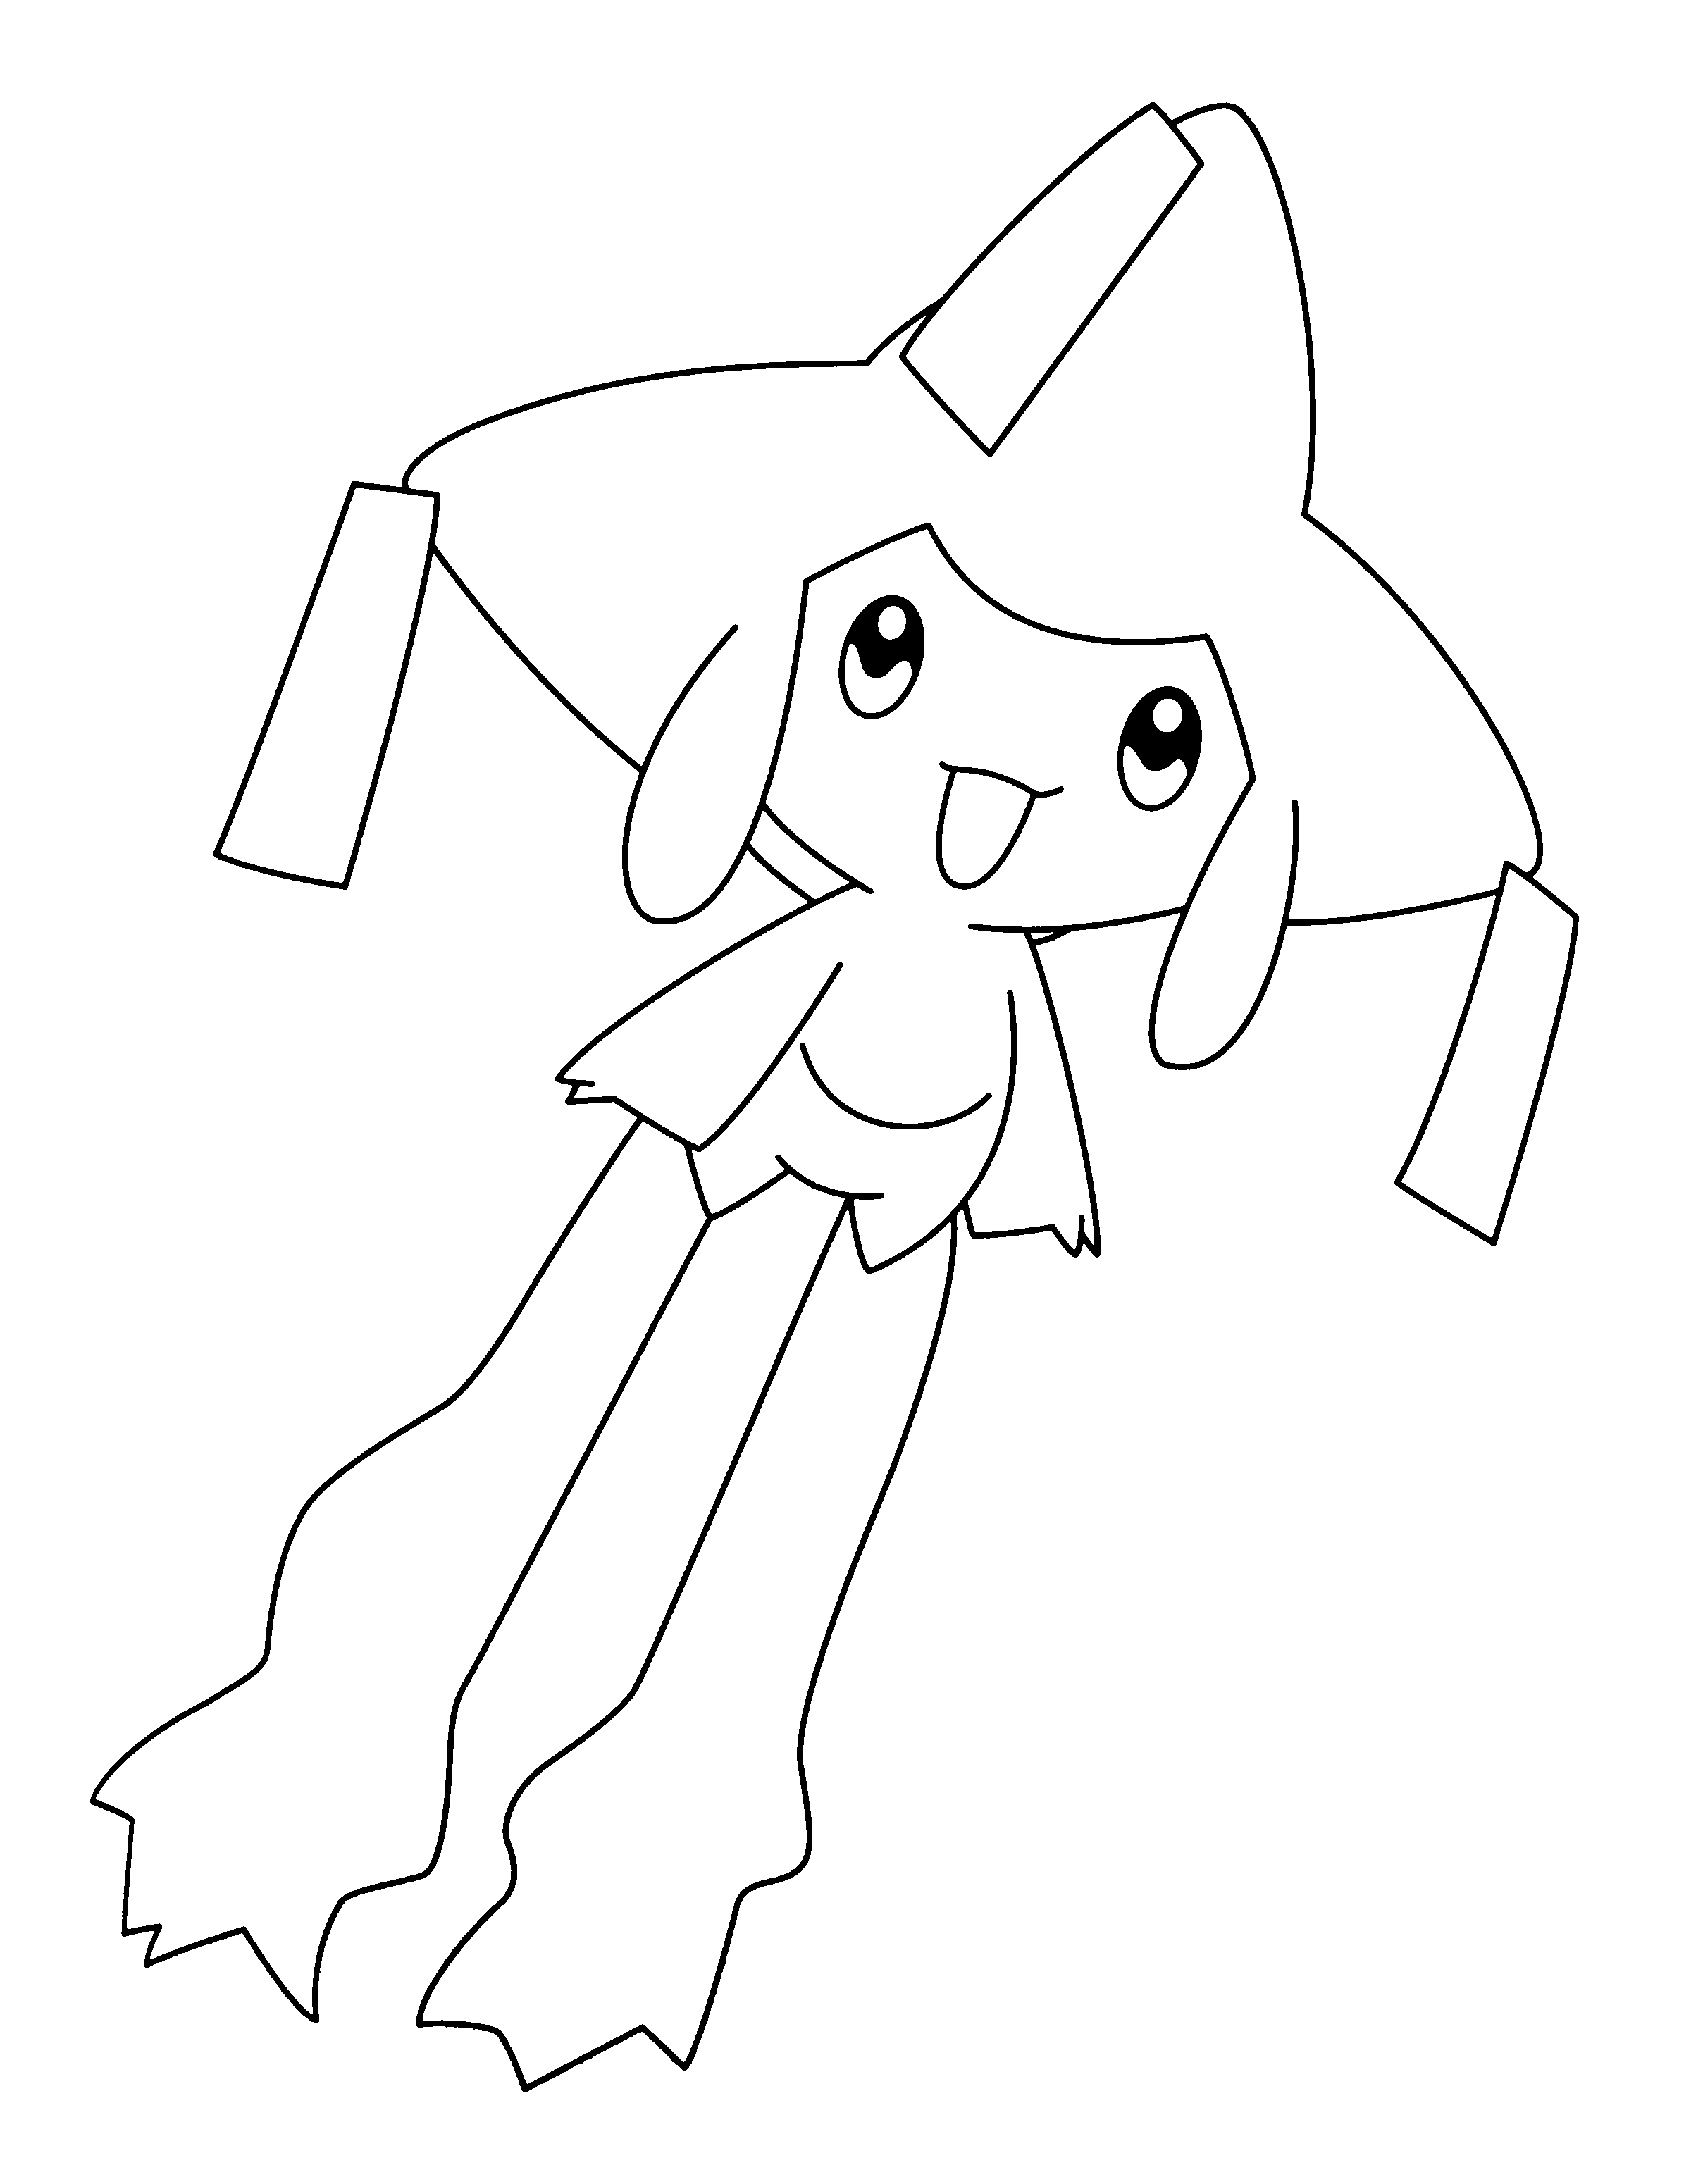 dibujo-para-colorear-pokemon-imagen-animada-0597